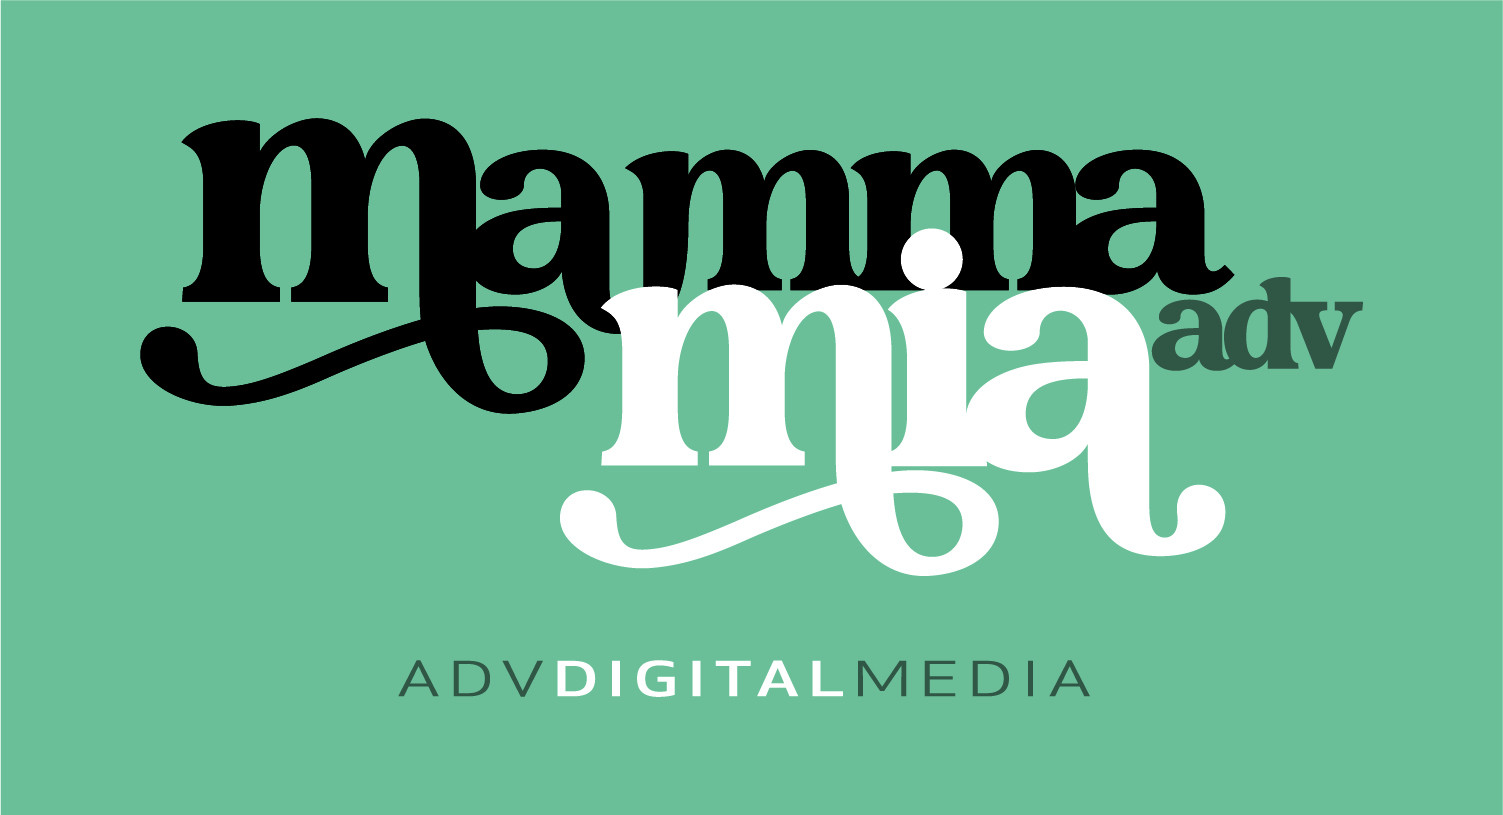 Adv Activa incorpora DN Agency e dà vita a Mamma Mia Adv, fully integrated agency che mira a raddoppiare a 6 milioni il fatturato in 18 mesi